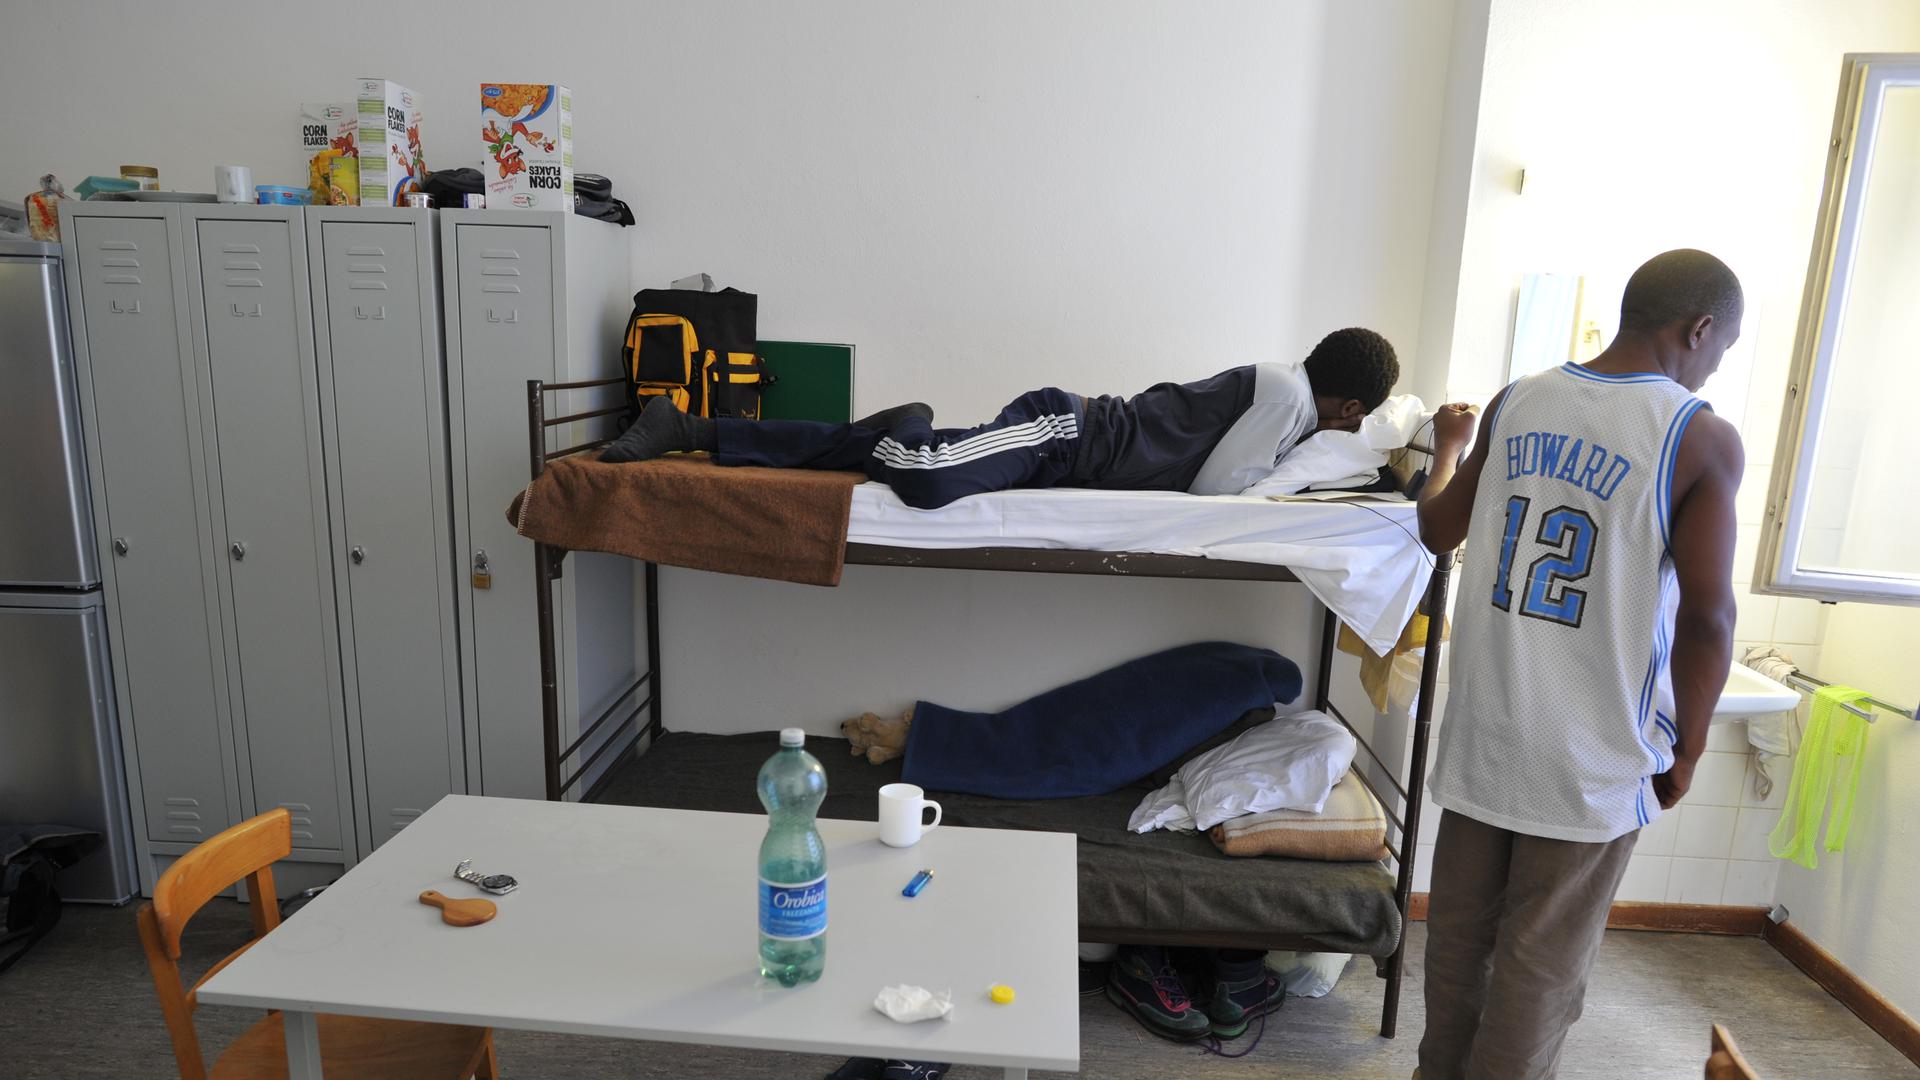 ARCHIV - Jugendliche, sogenannte "unbegleitete minderjährige Flüchtlinge (umF)" halten sich am 01.02.2011 in ihrem Zimmer eines Asylbewerberheims in München (Oberbayern) auf. Foto: Peter Kneffel/dpa   (zu dpa "Alleine und fern der Heimat - unbegleitete minderjährige Flüchtlinge" vom 16.09.2016) +++(c) dpa - Bildfunk+++ | Verwendung weltweit